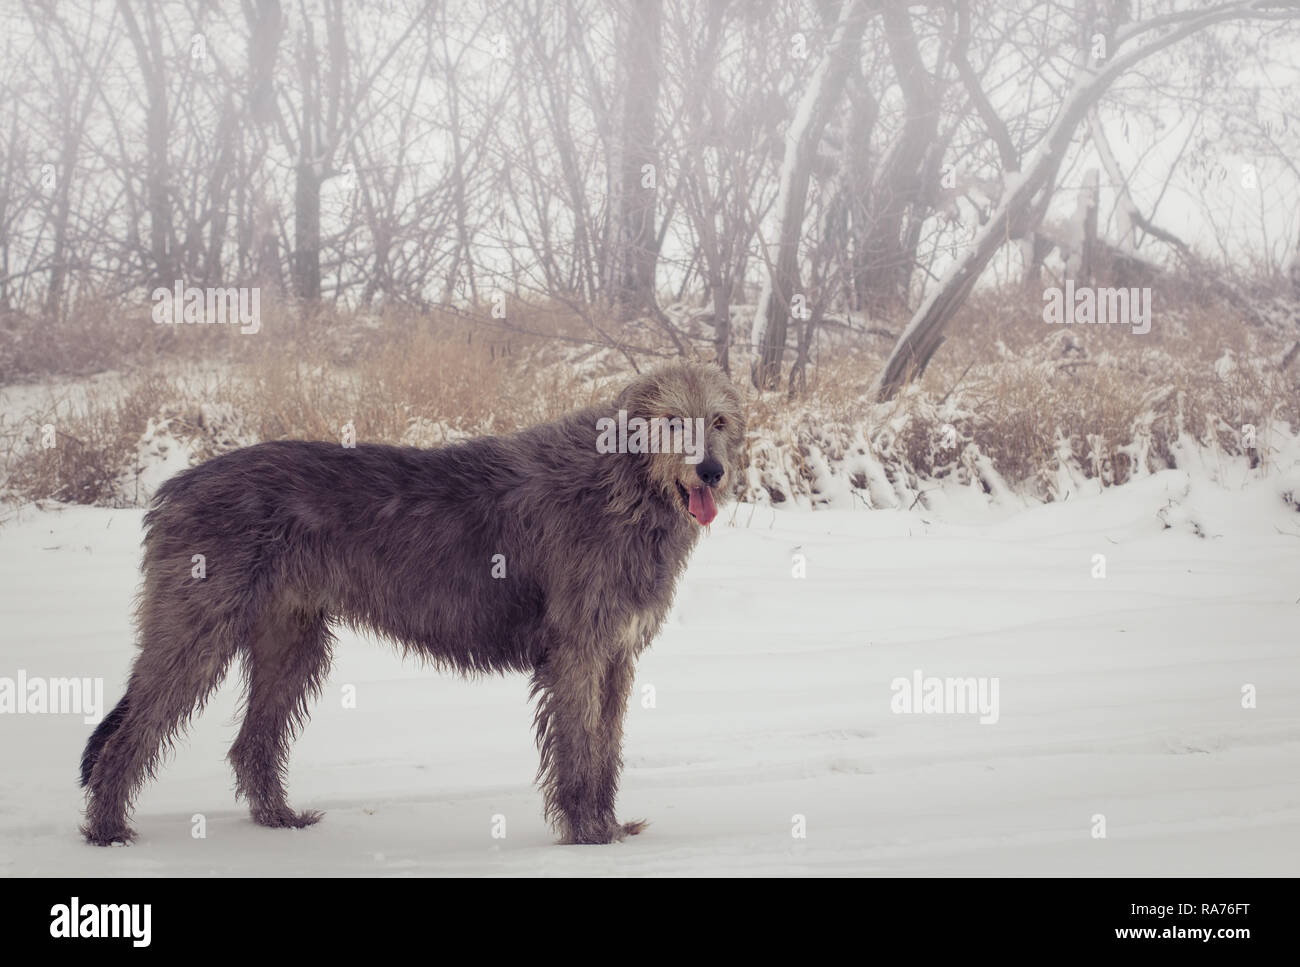 Adulto grigio Irish Wolfhound sorge nel profilo in piena crescita e guarda nella telecamera. Inverno all'aperto il fuoco selettivo dell'immagine. Ritratto di un cane di grandi dimensioni. Foto Stock